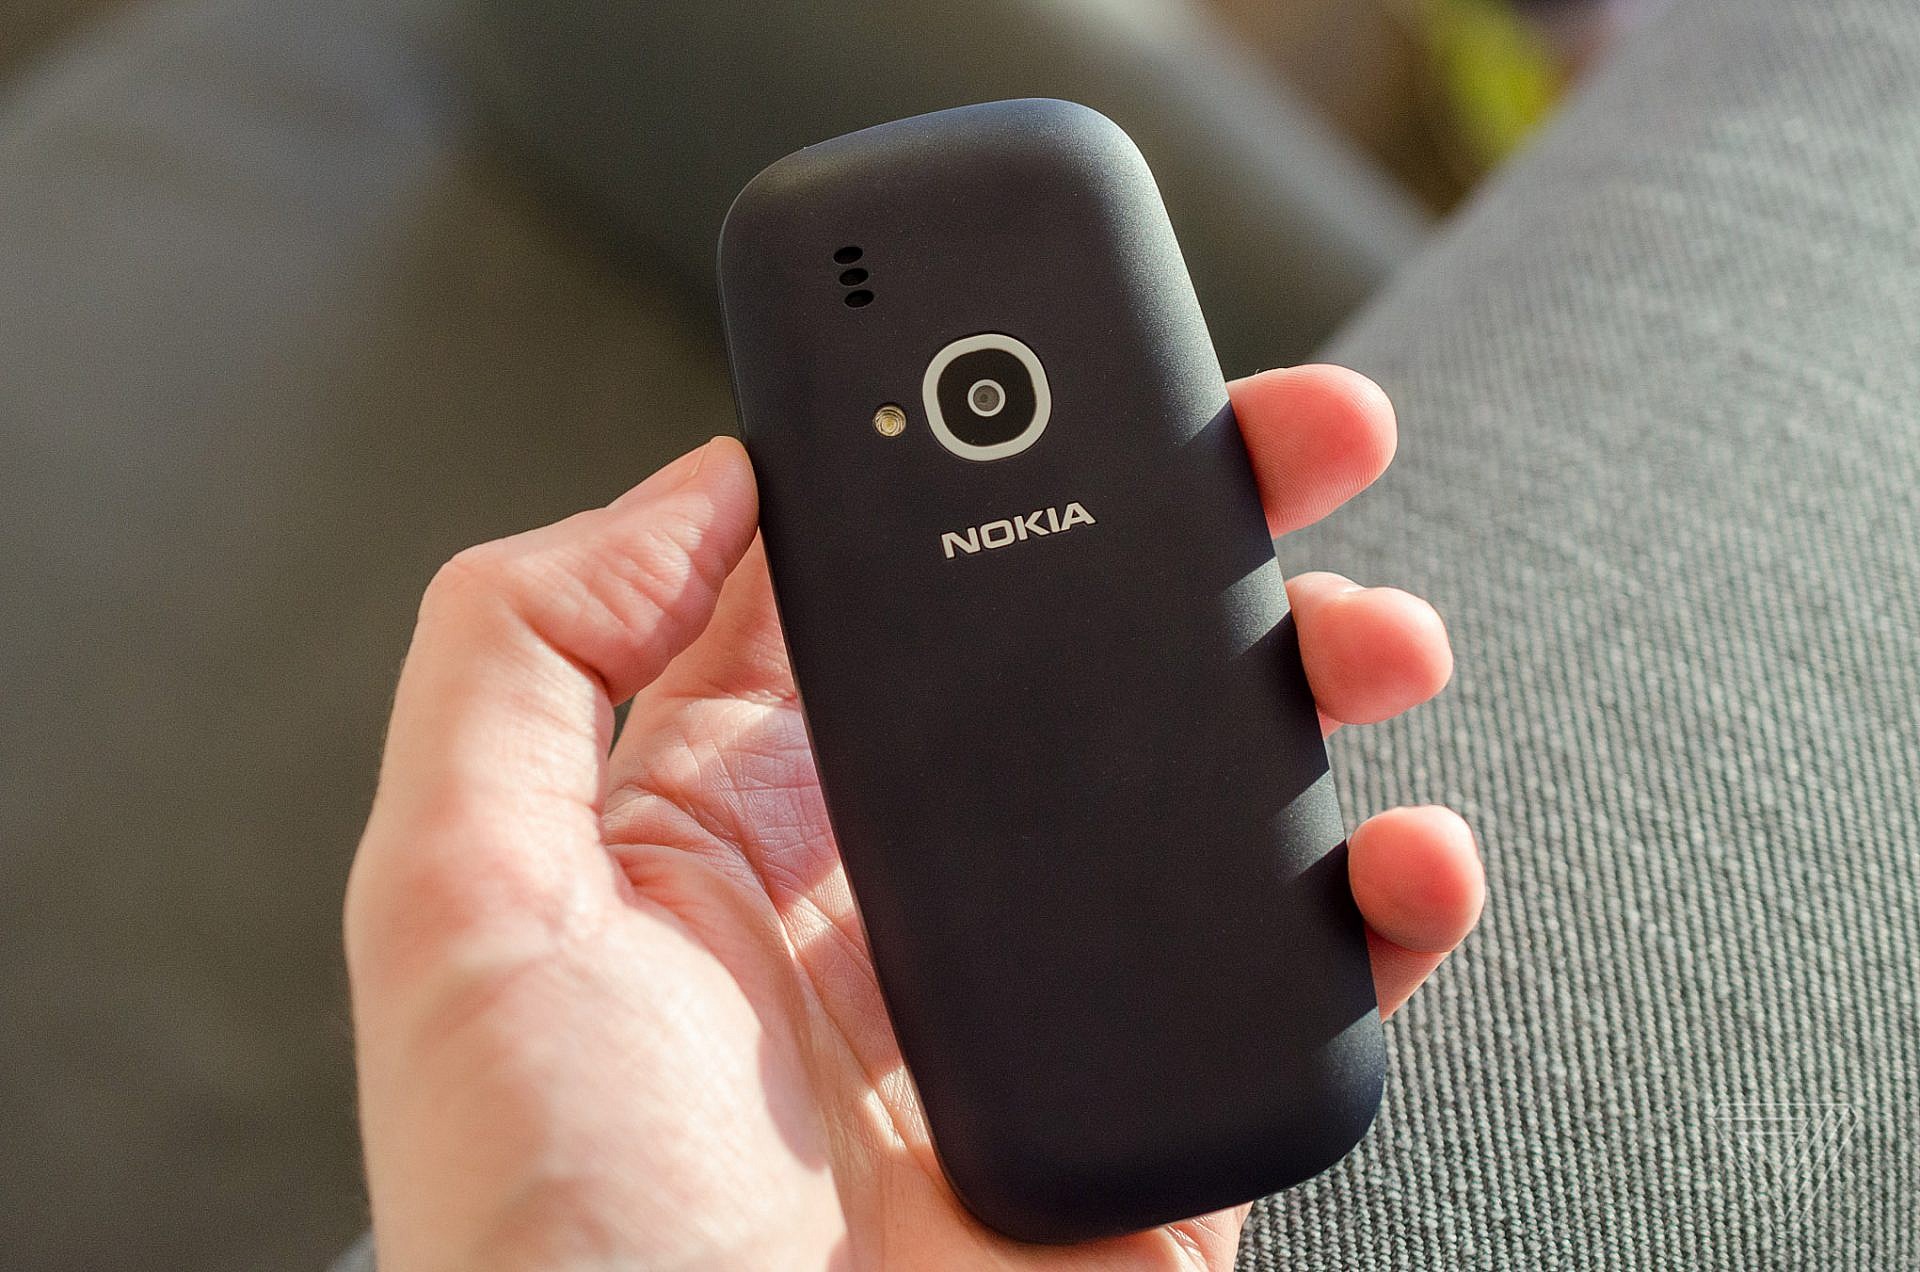 ฮา! เมื่อ Nokia 3310 รุ่นใหม่กล้องดียิ่งกว่า Samsung Galaxy S7 edge